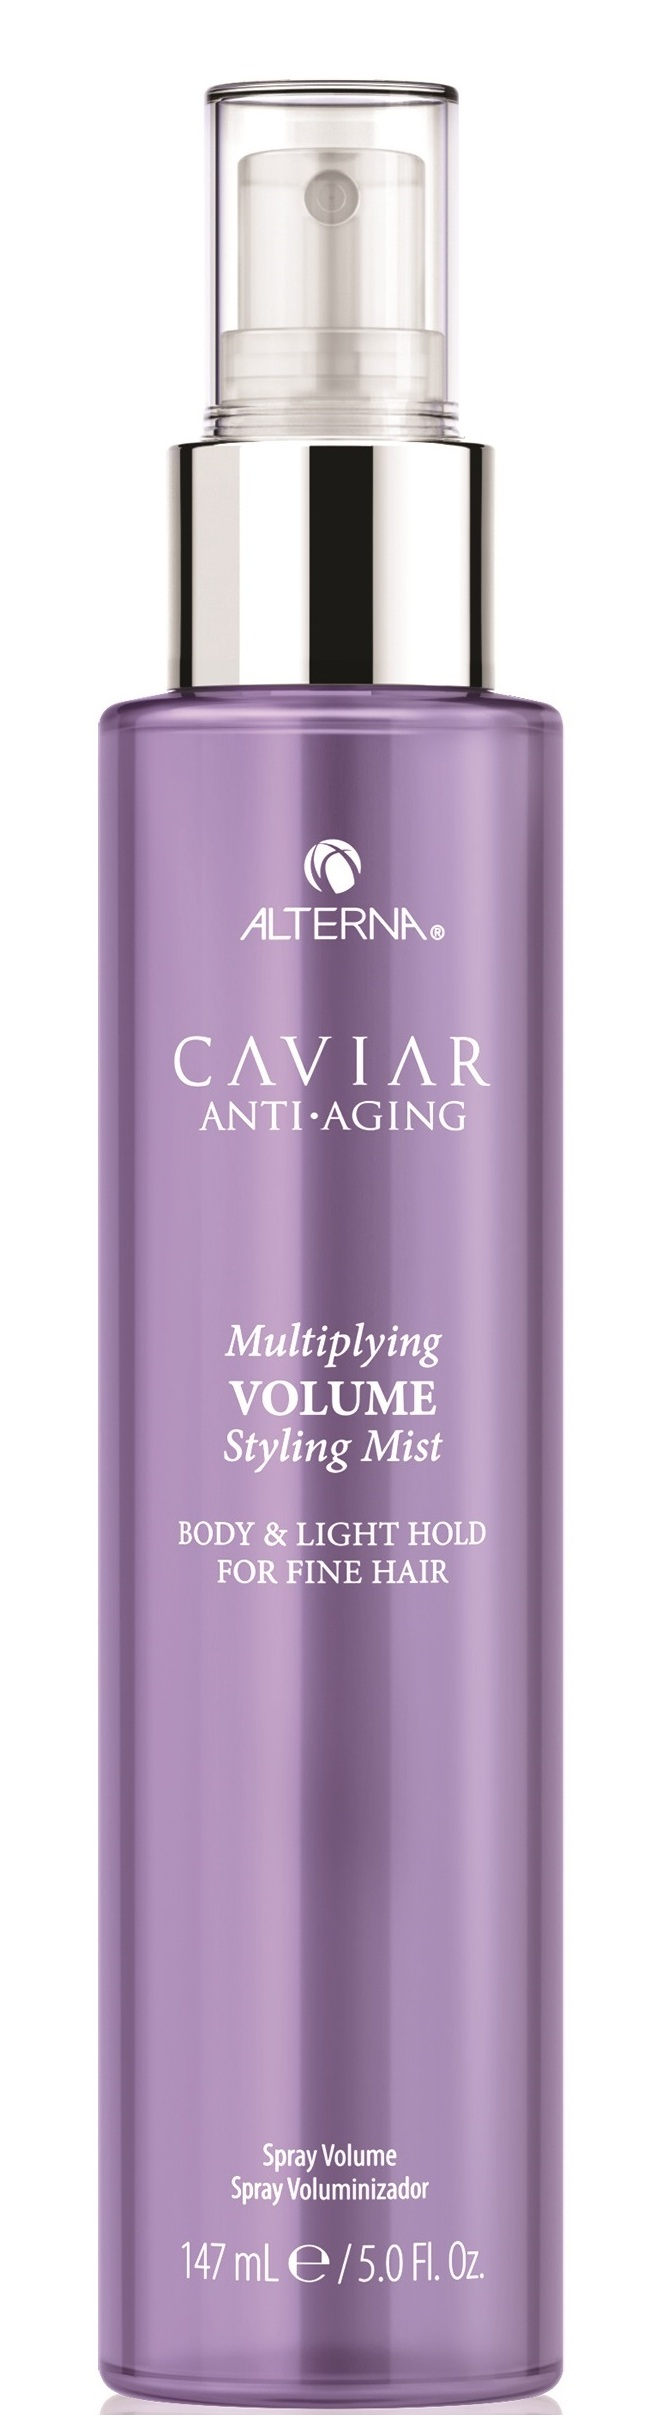 ALTERNA Спрей-лифтинг невесомый для создания экстраобъема с кератиновым комплексом / Caviar Anti-Aging Multiplying Volume Styling Mist 147 мл спрей alterna